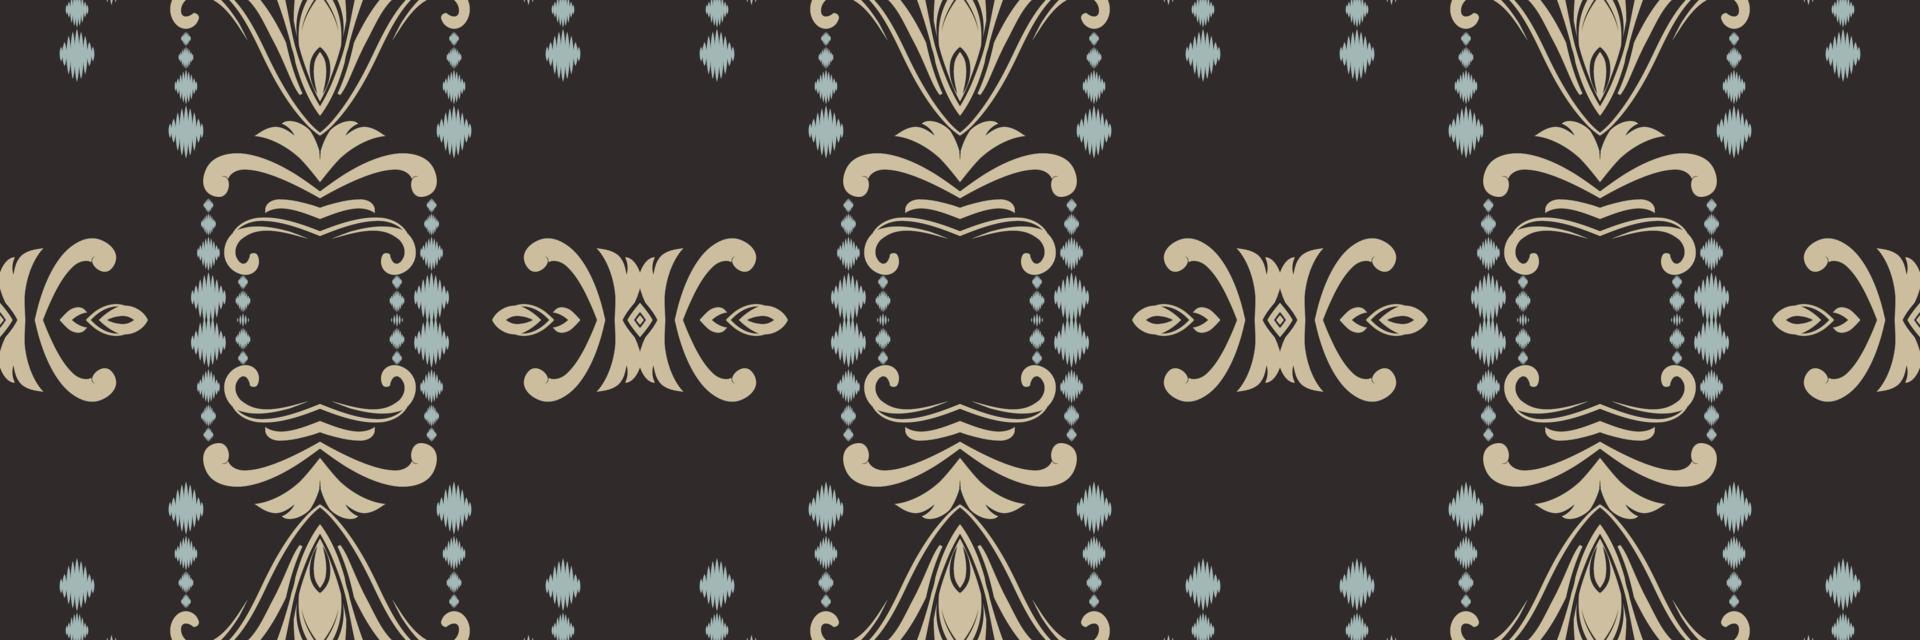 motivo ikat disegni batik tessile senza soluzione di continuità modello digitale vettore design per Stampa saree Kurti Borneo tessuto confine spazzola simboli campioni progettista